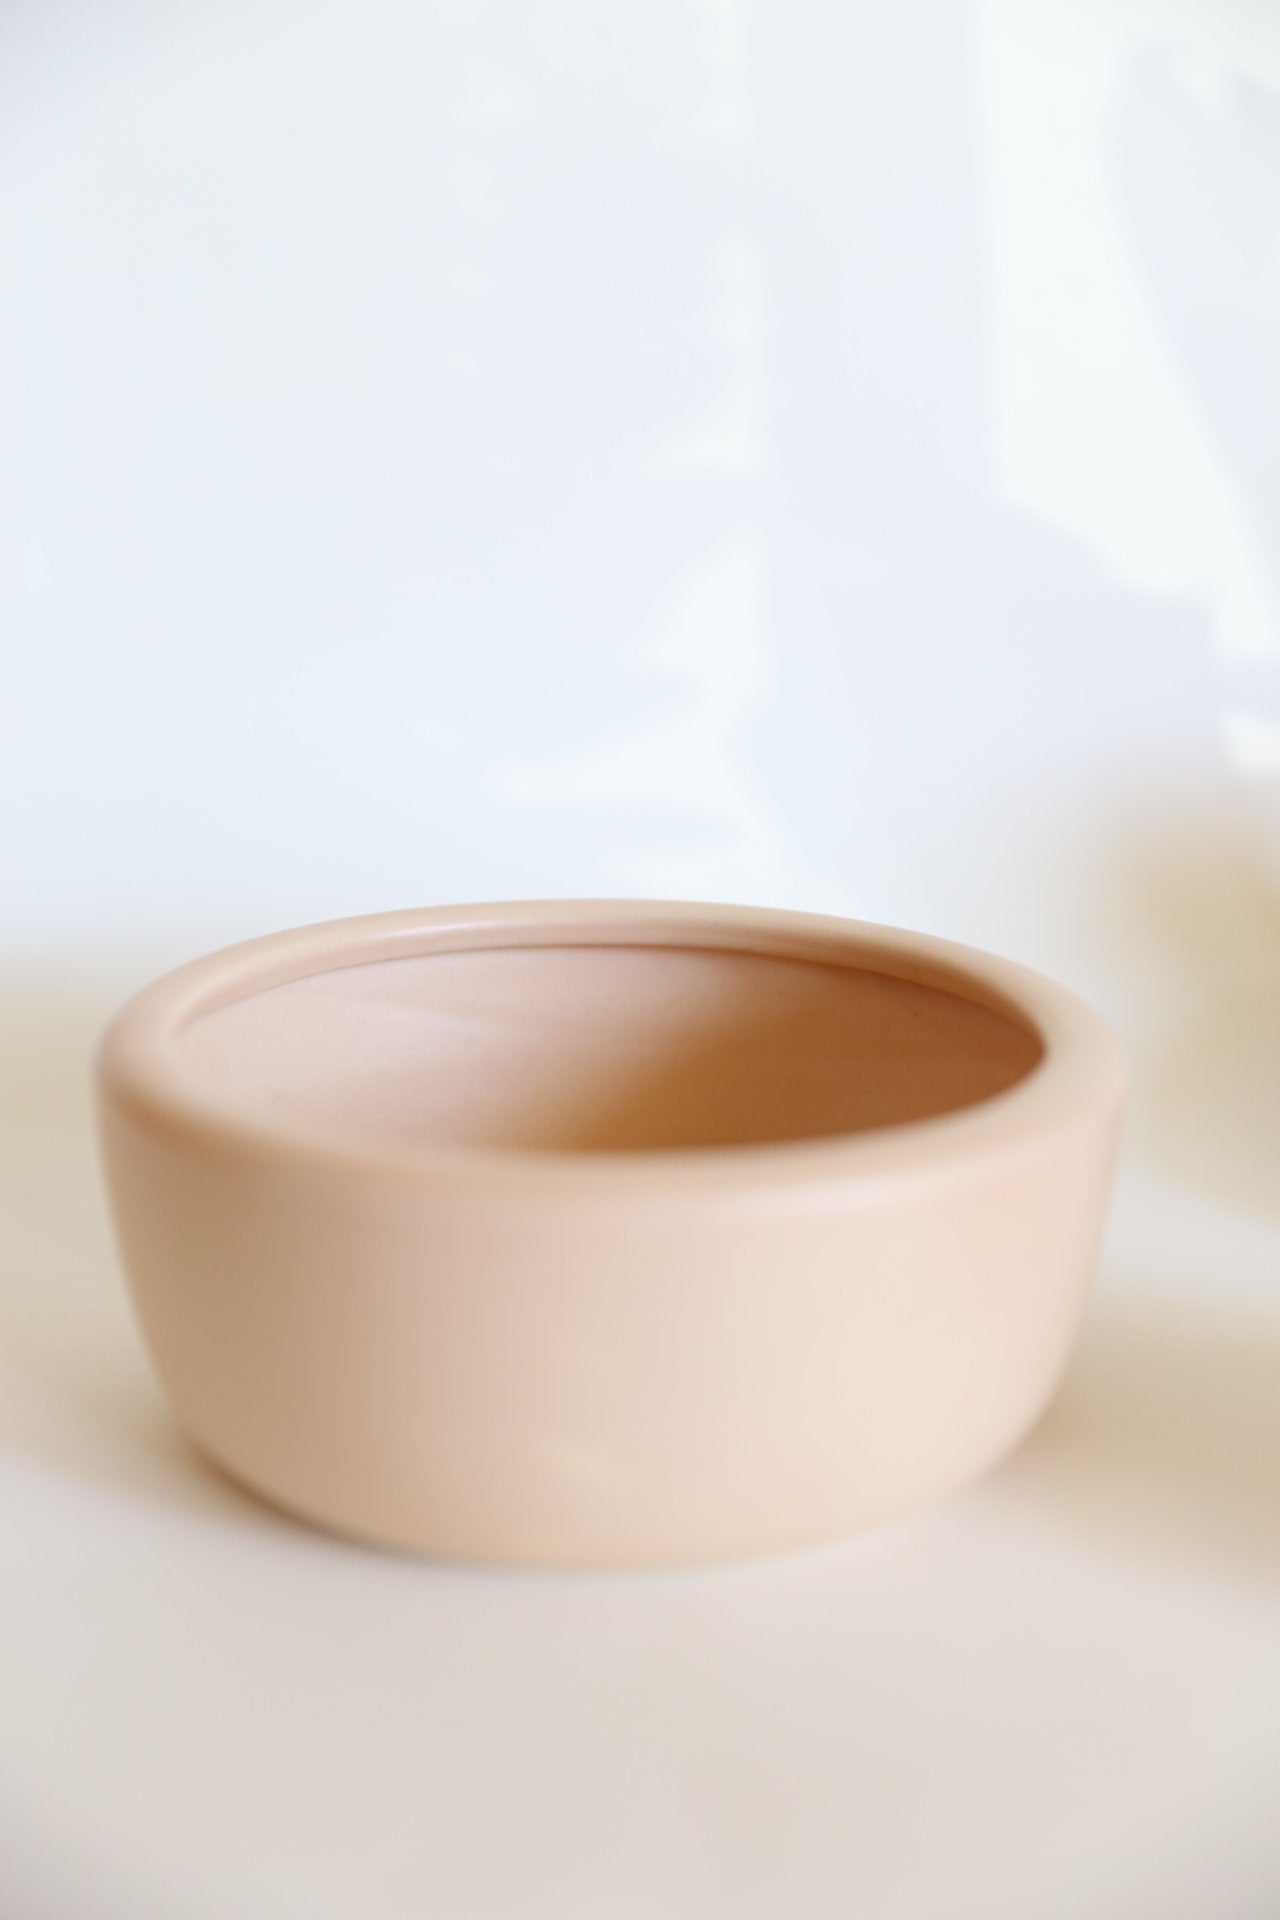 beige taupe round ceramic bowl